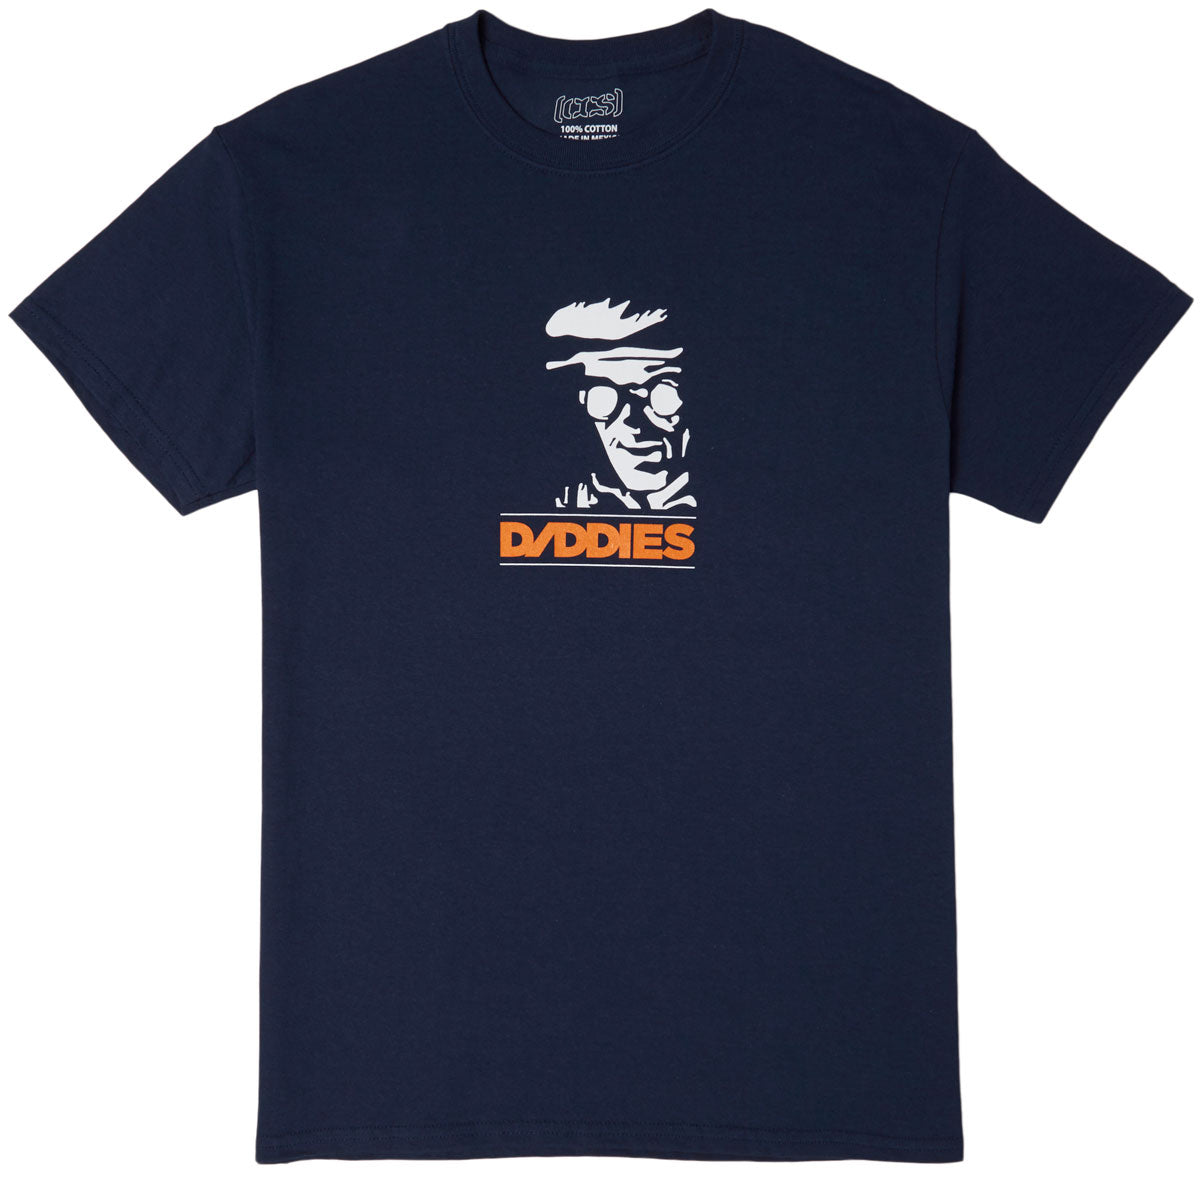 Daddies Board Shop Welder T-Shirt - Navy/White/Orange image 1